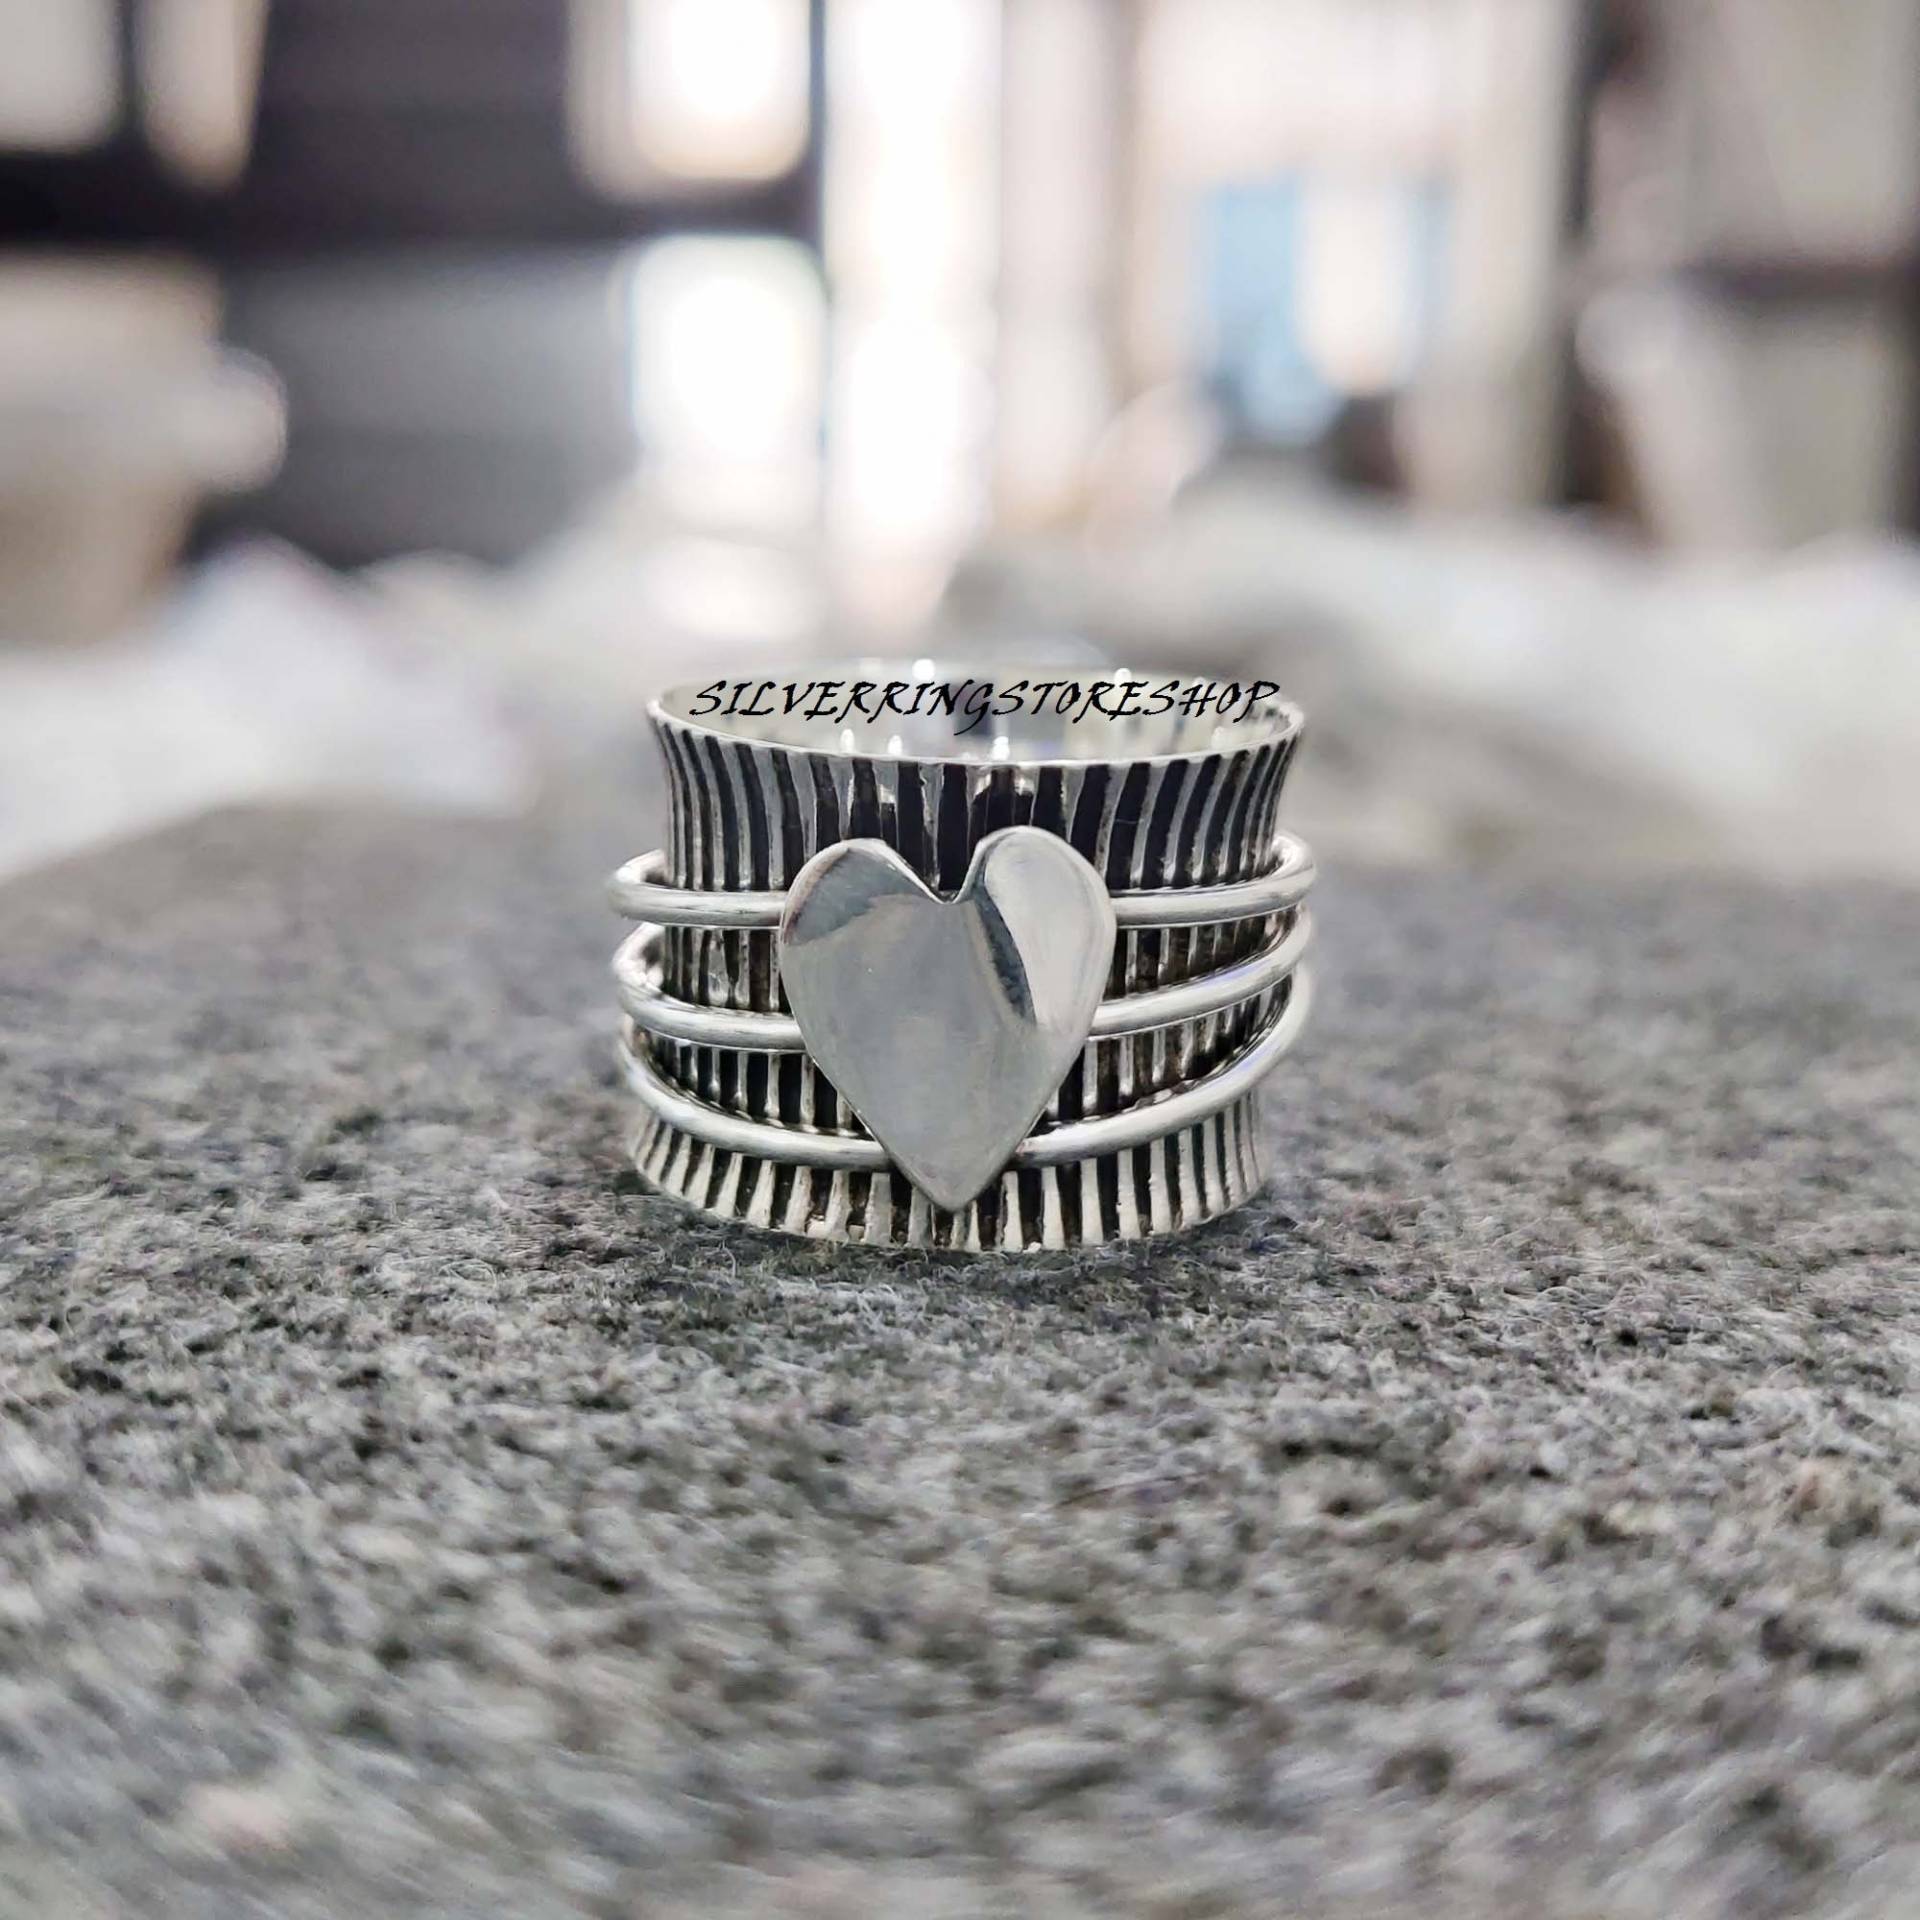 Herz Spinner Ring, 925 Sterling Silber Fidget Band Zierlicher Statement Boho Handgemachter Geschenk Für Sie von silverringstoreshop